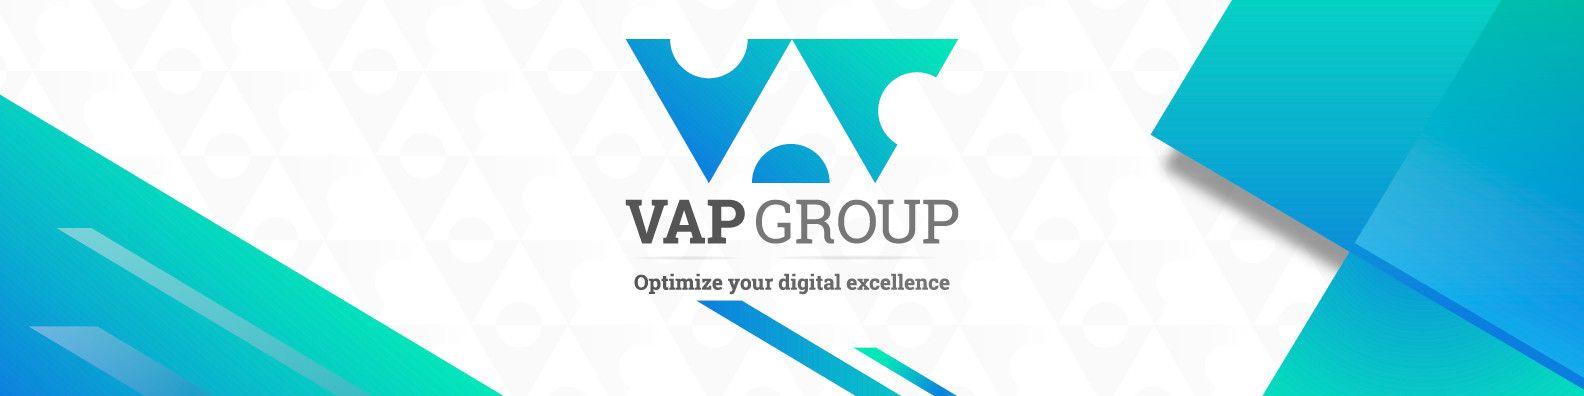 VAP Logo - VAP Group